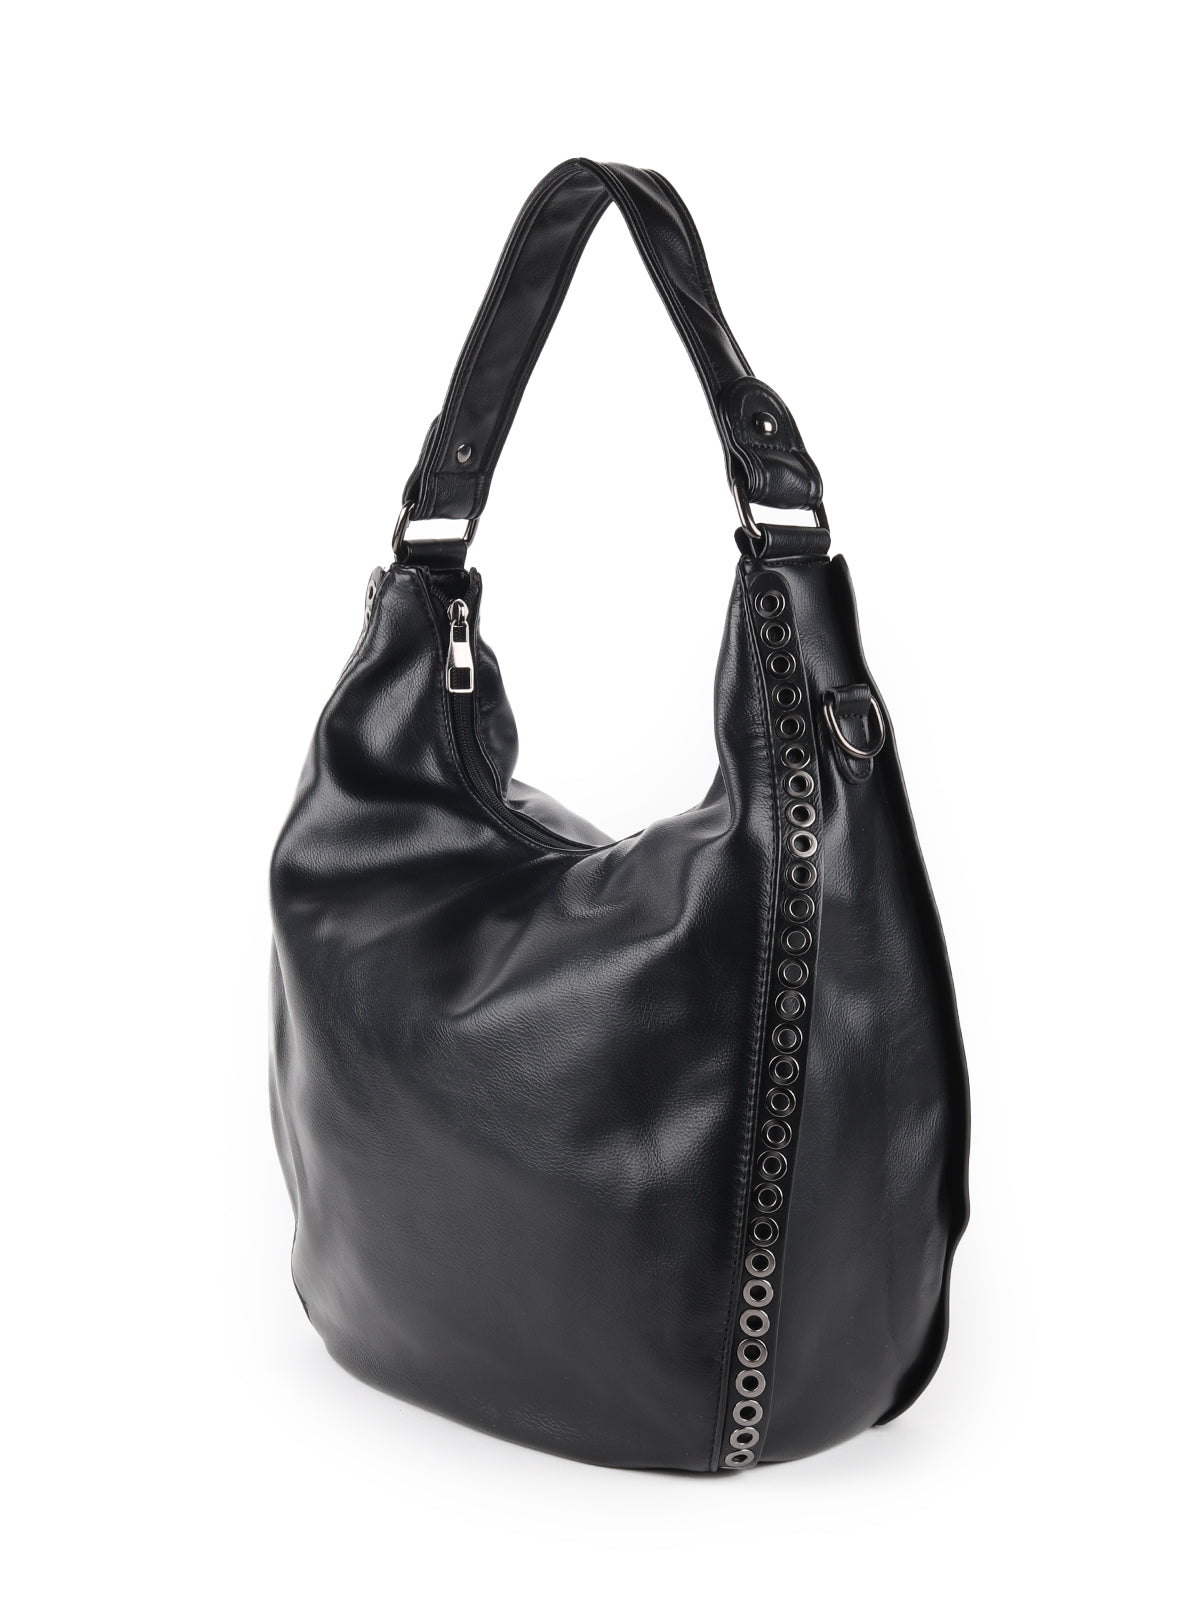 Odette Black Embellished Polyurethane Tote Bag For Women